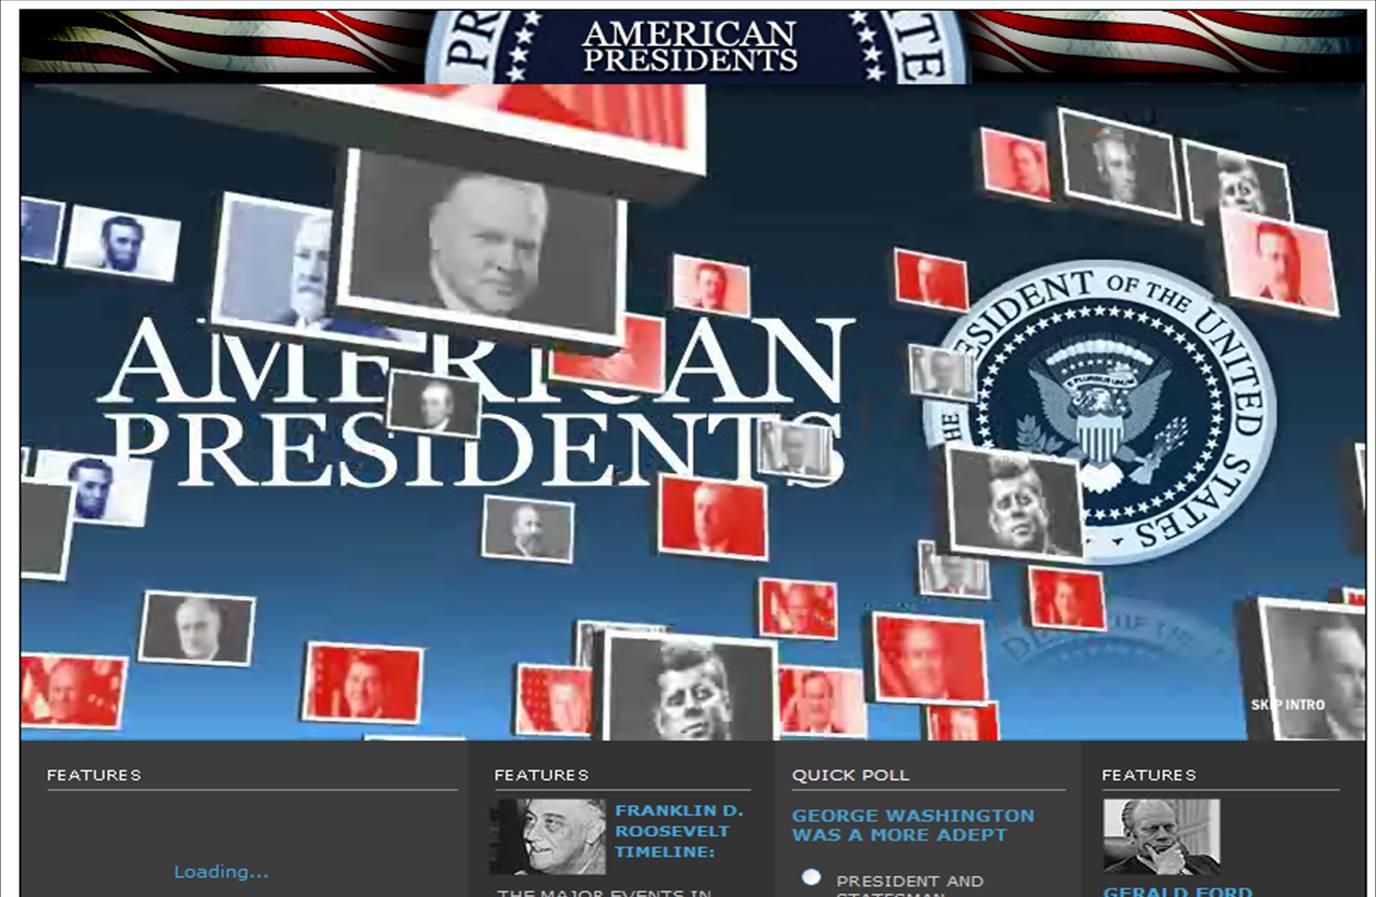 American Presidents Website image